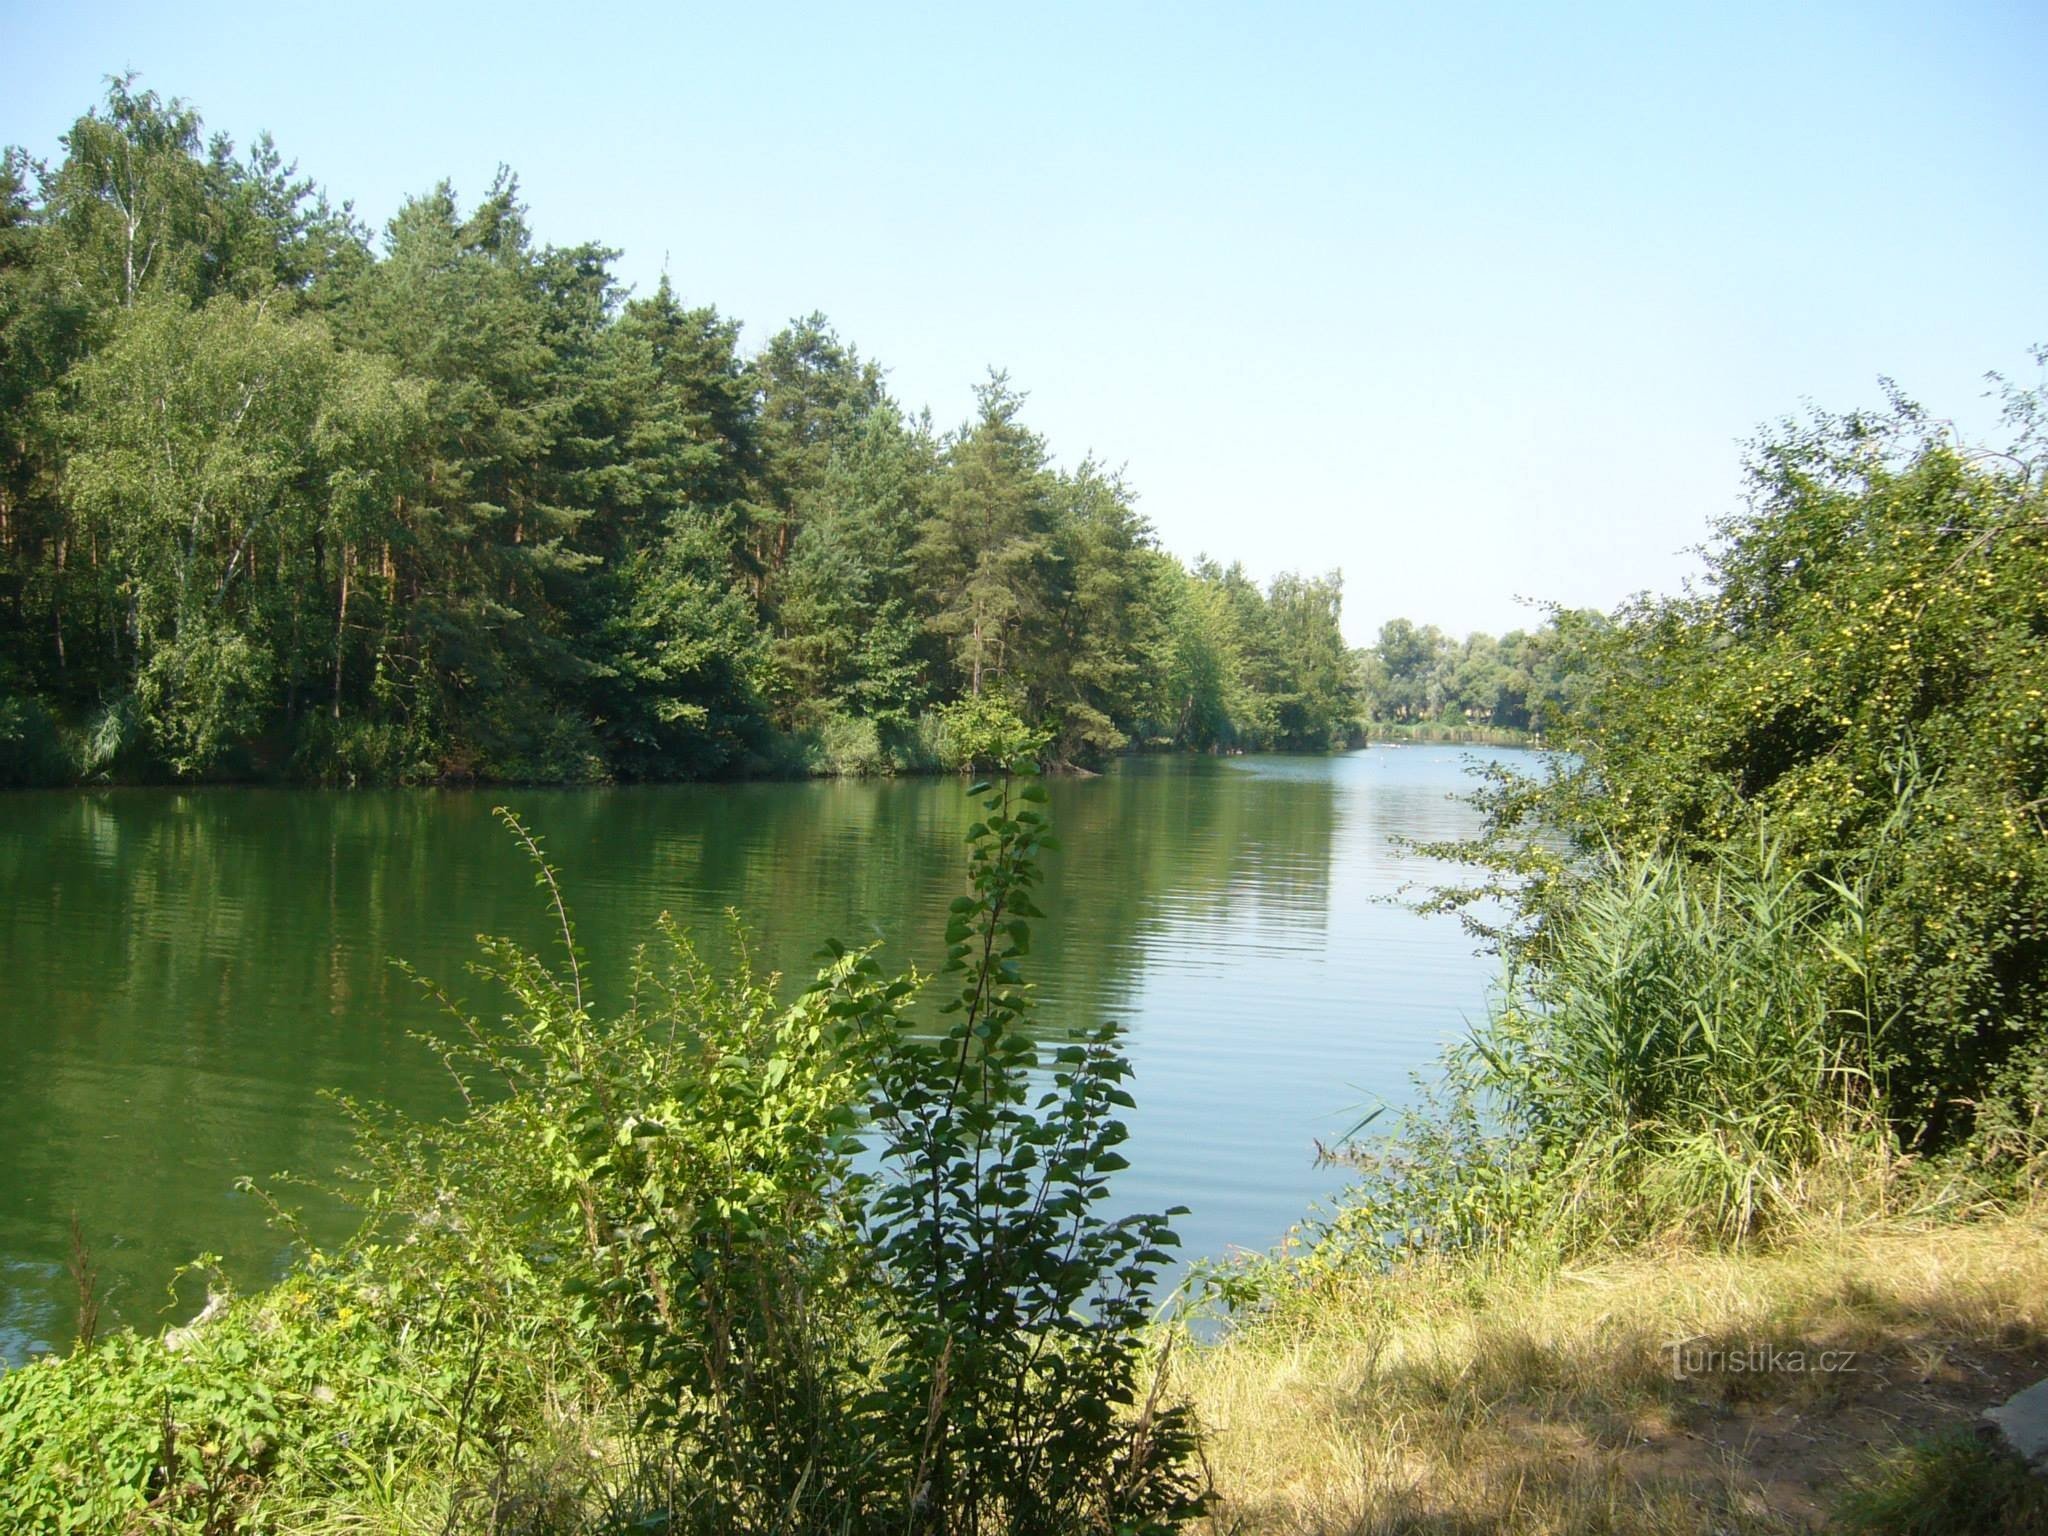 オヴチャリ - クジェネケ湖